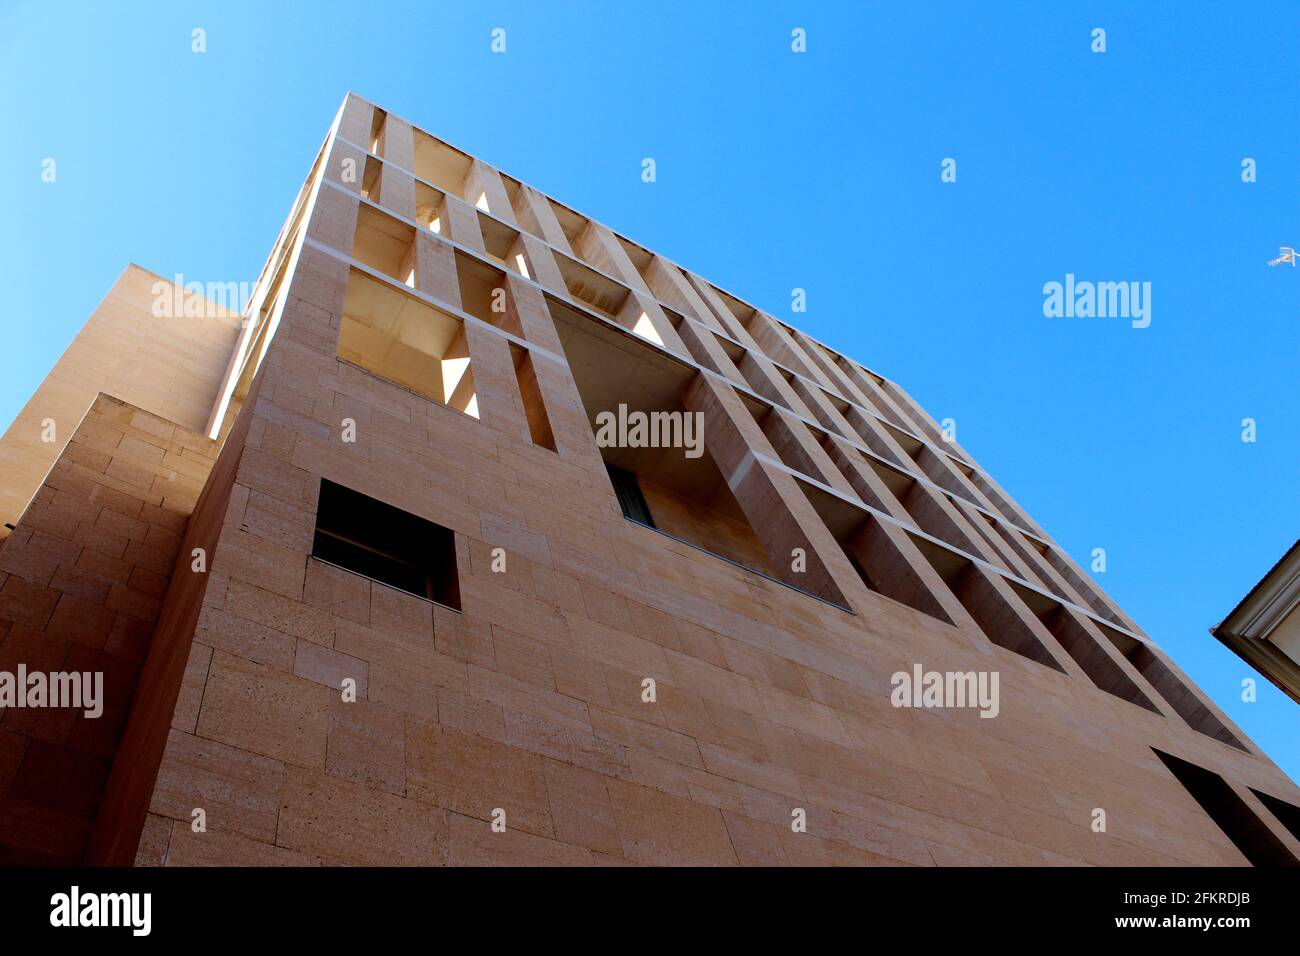 Edificio moderno de piedra arenisca rectalinear desde abajo con un cielo azul claro en el fondo. Ayuntamiento de Murcia, Murcia, España por Rafael Moneo Foto de stock